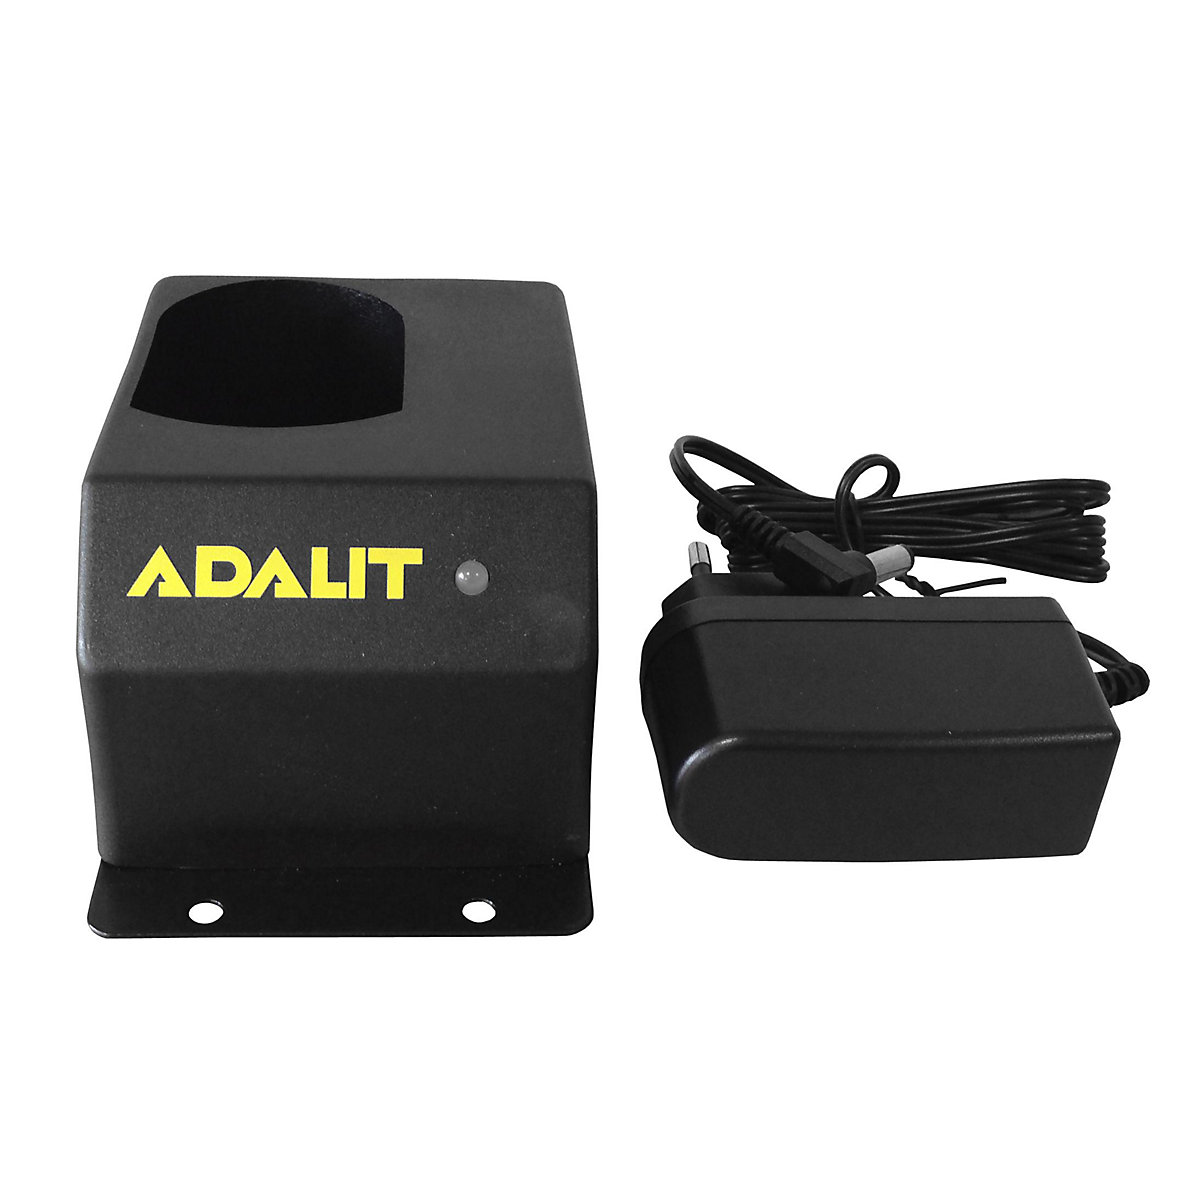 Laadapparaat voor ADALIT®-handlampen